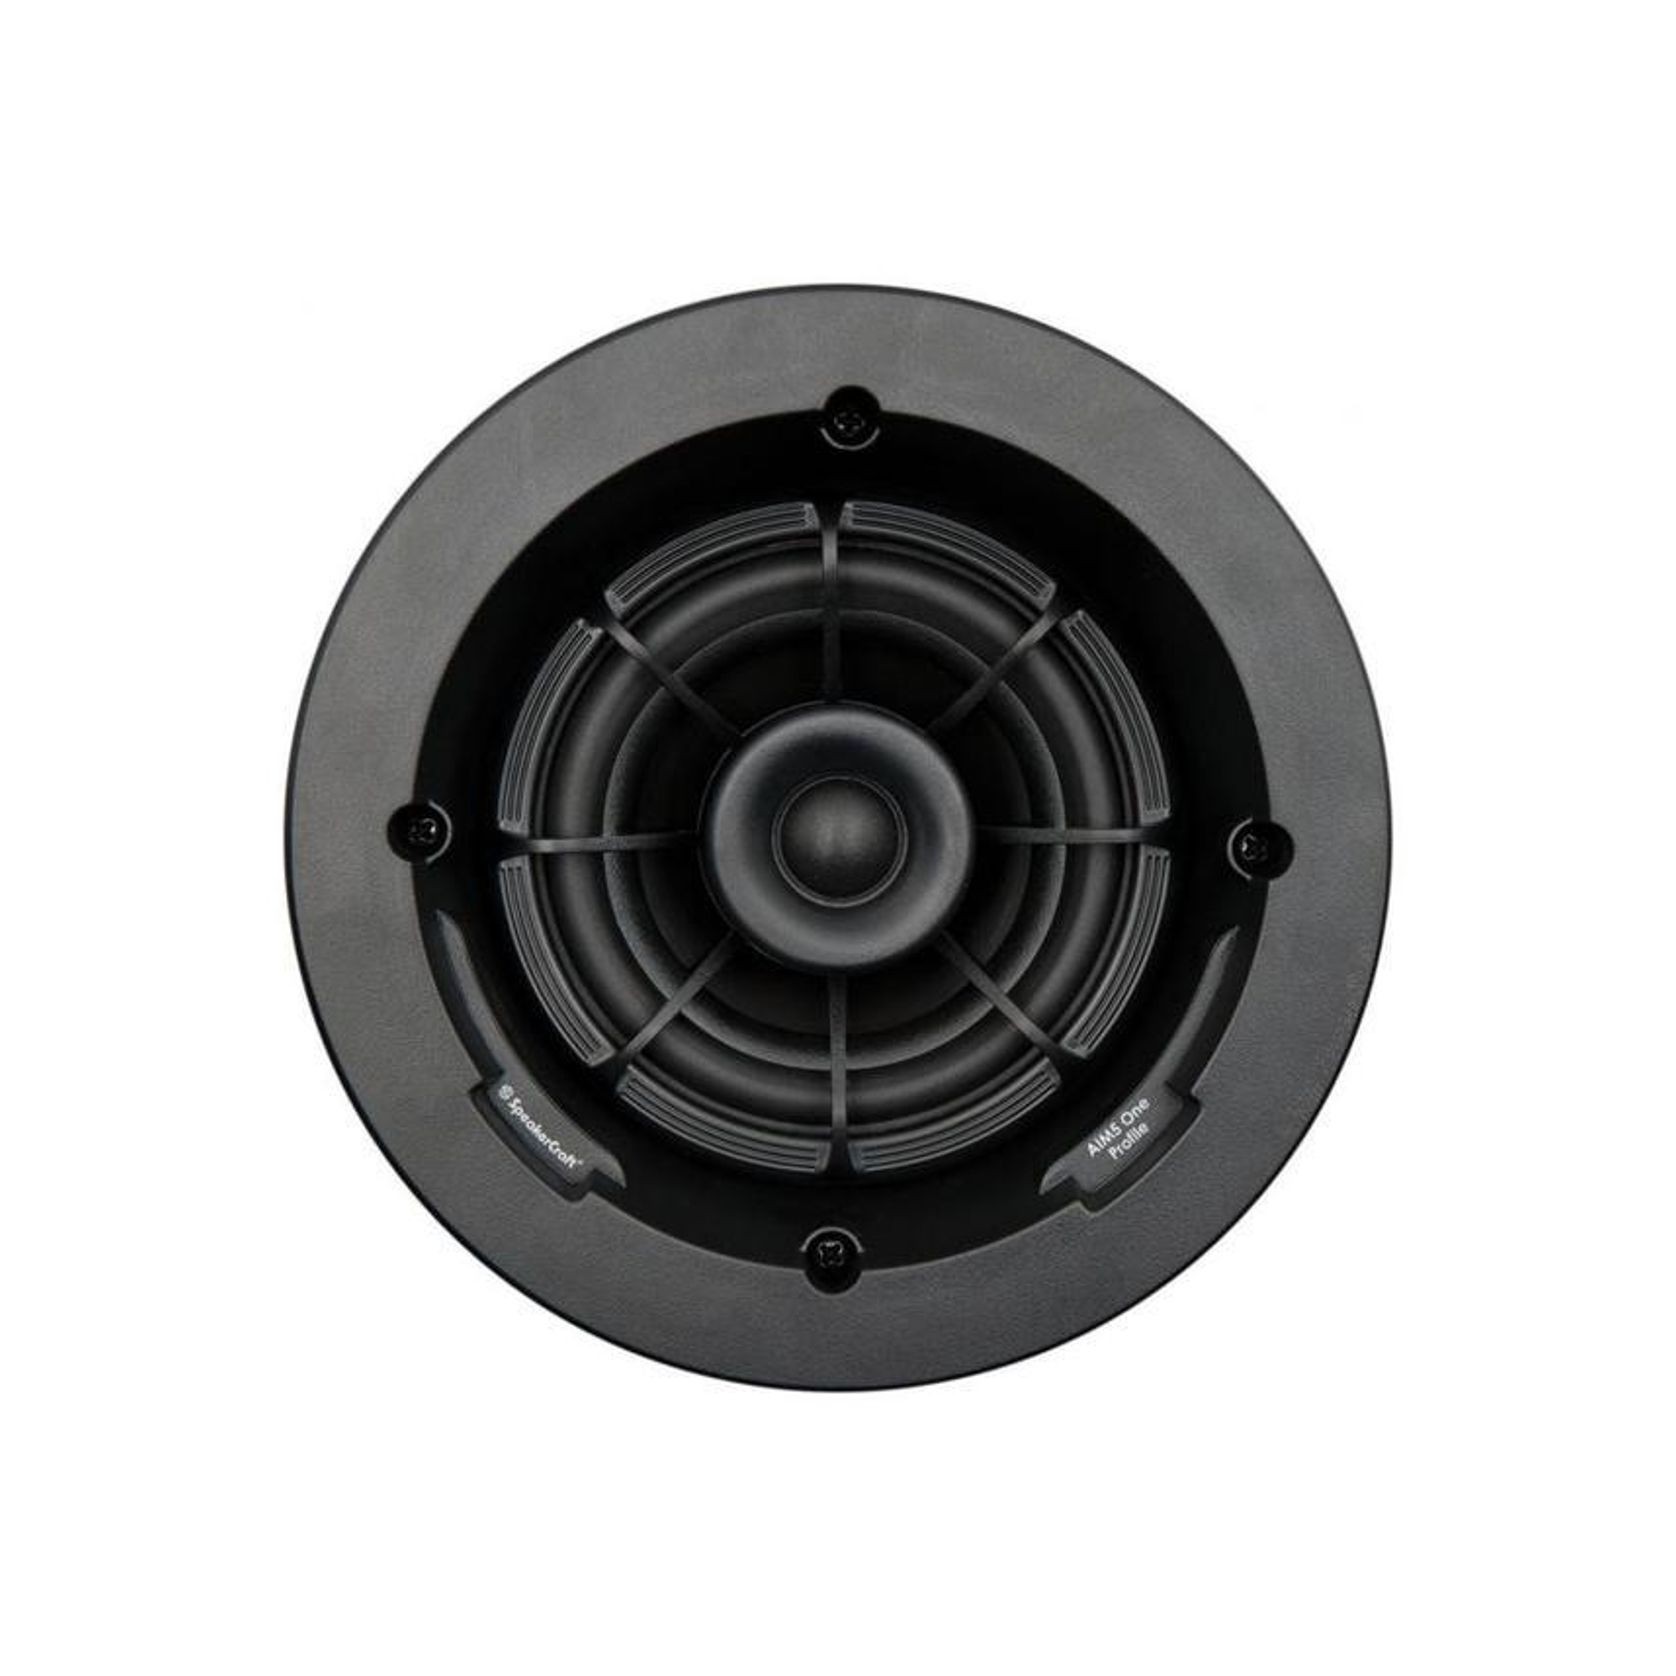 Speakercraft Aim5 In-Ceiling Speakers gallery detail image